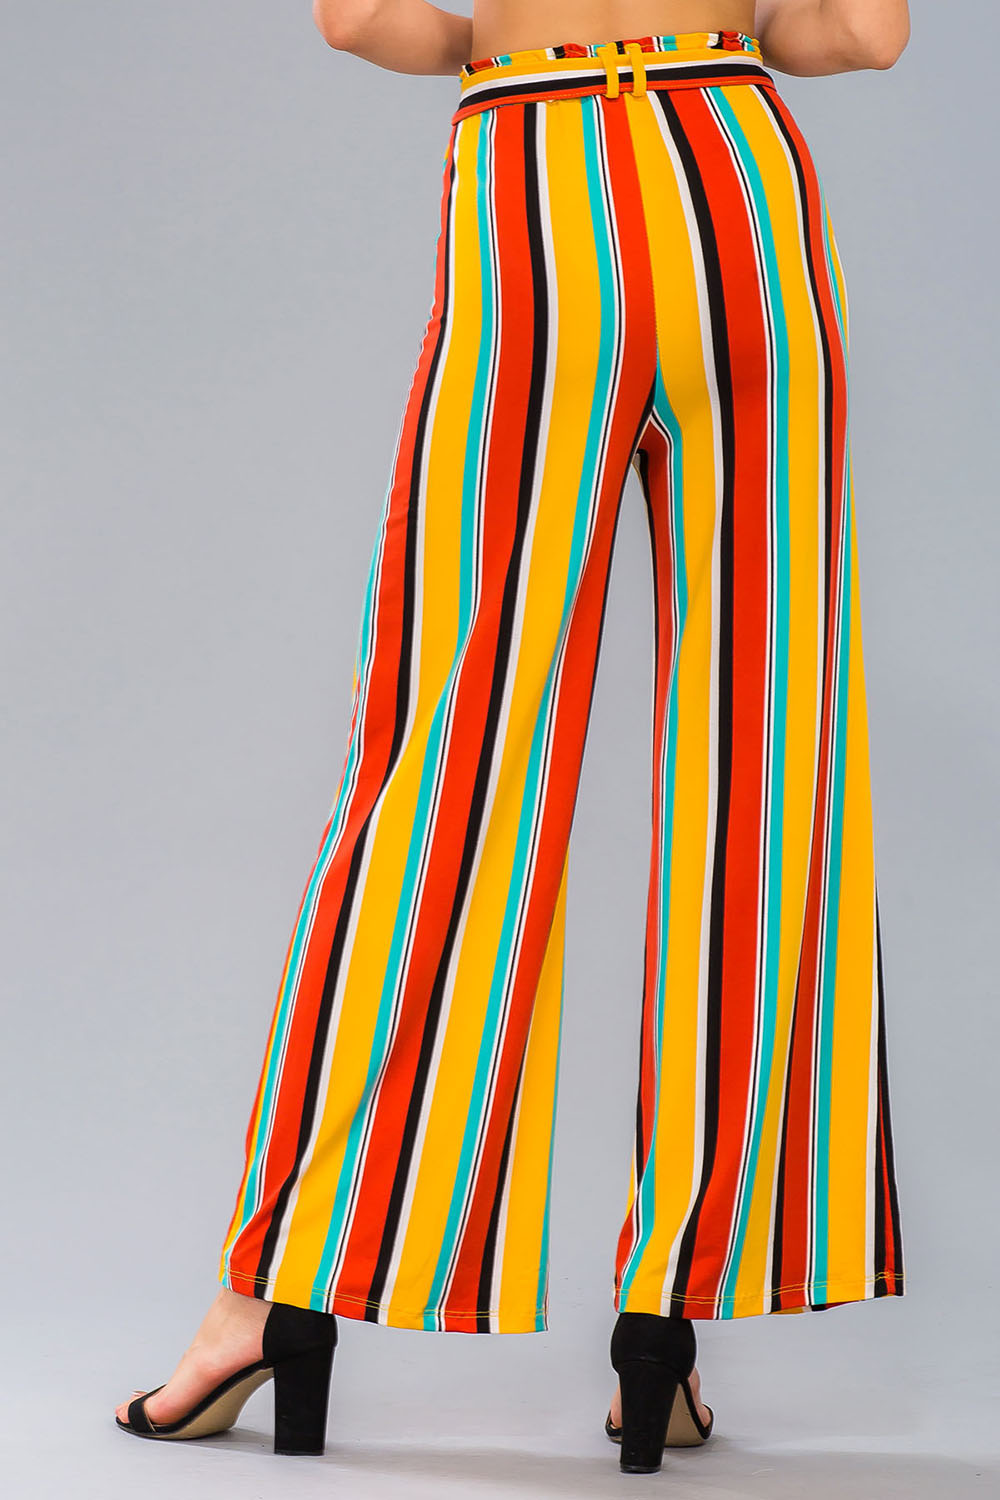 [$2/piece] Striped Wide Leg Pants